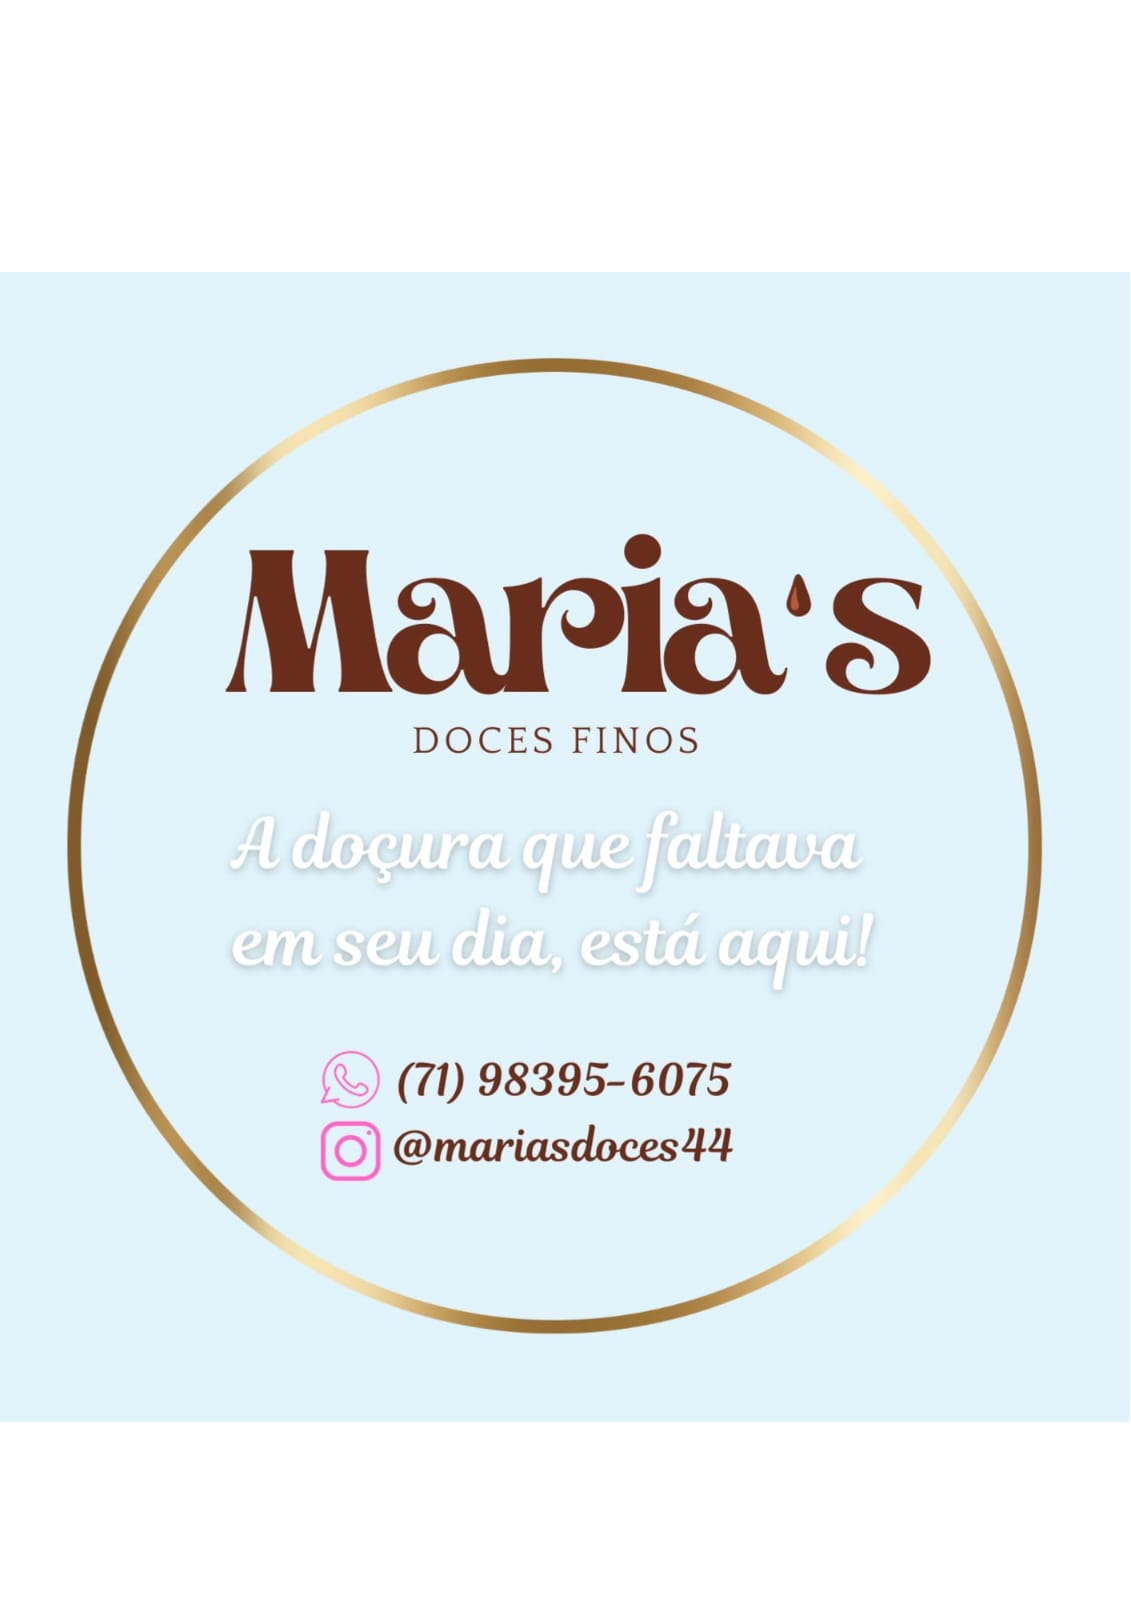 Maria's doces finos aaa